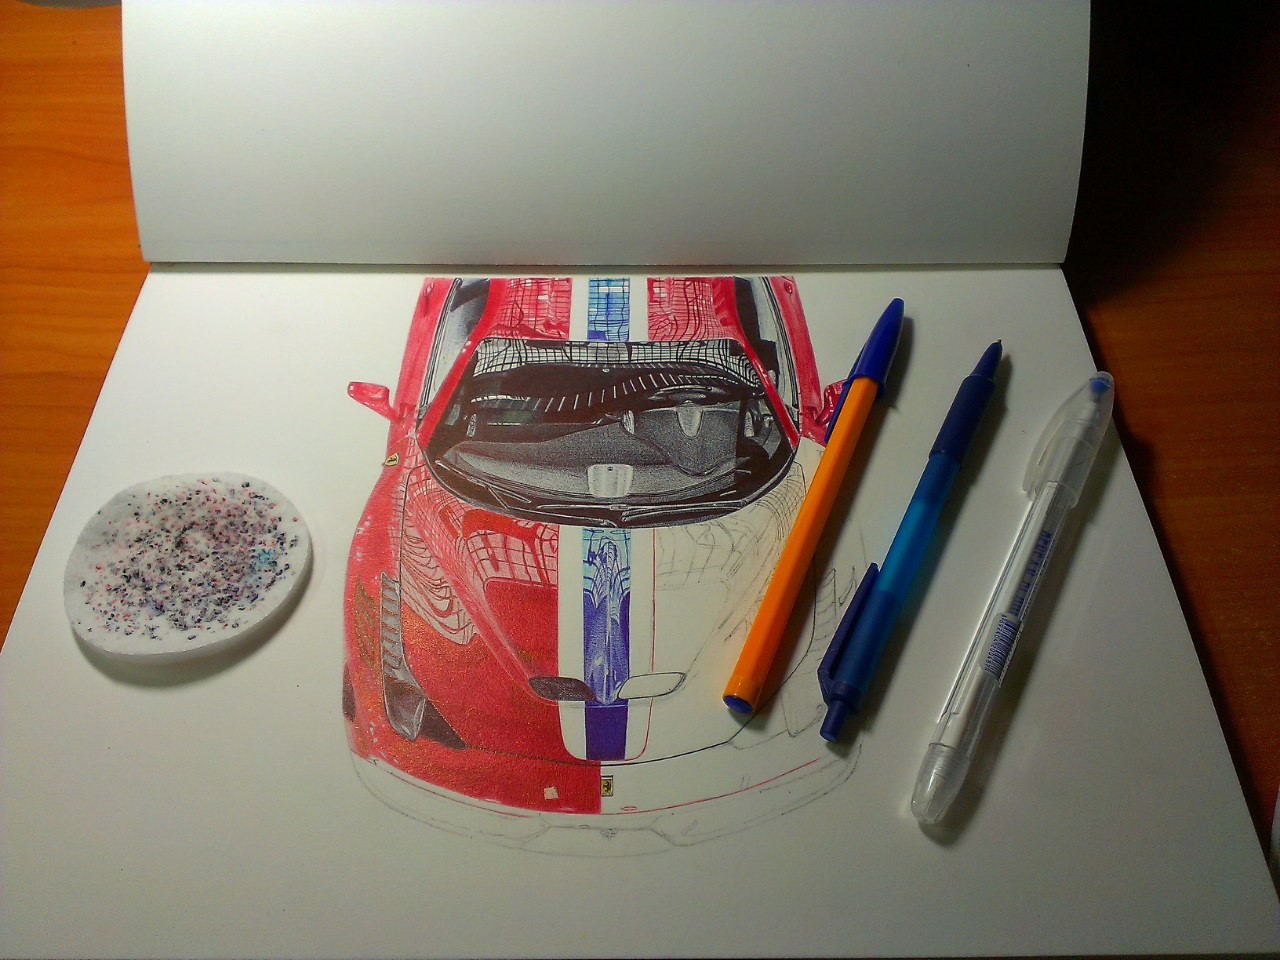 Ferrari 458 - My, Auto, Art, Drawing, Pen drawing, Ball pen, Ferrari, Longpost, Ferrari 458, Photorealism